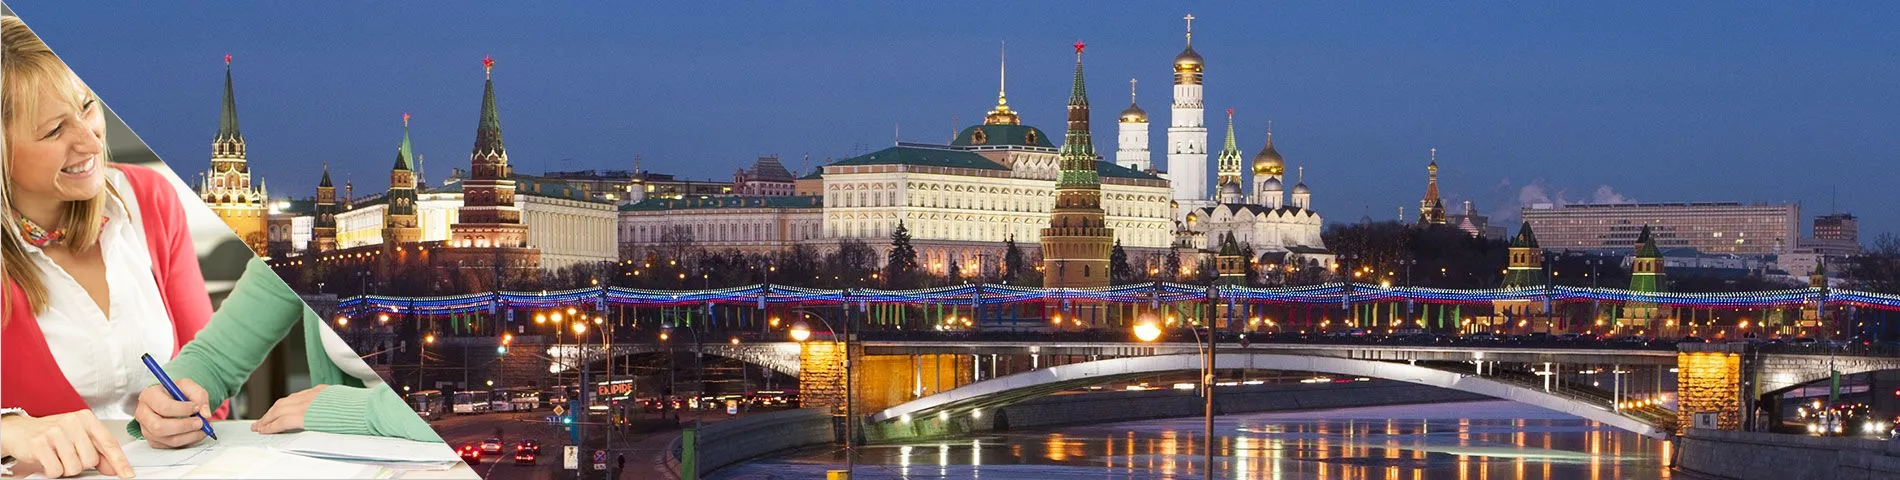 Moscou - Estude uma língua & more na casa do seu professor